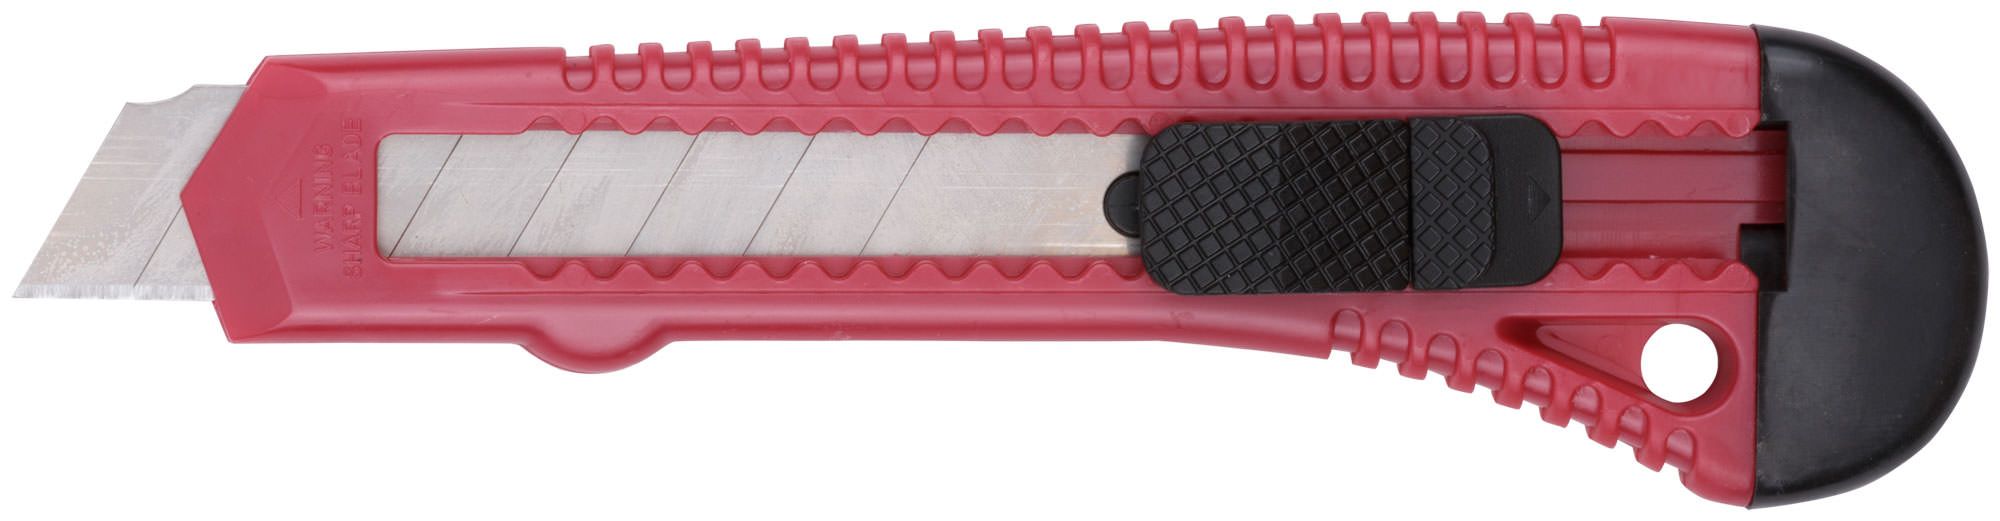 Нож технический с выдвижными лезвиями 18мм Лайт КУРС 10166 /334